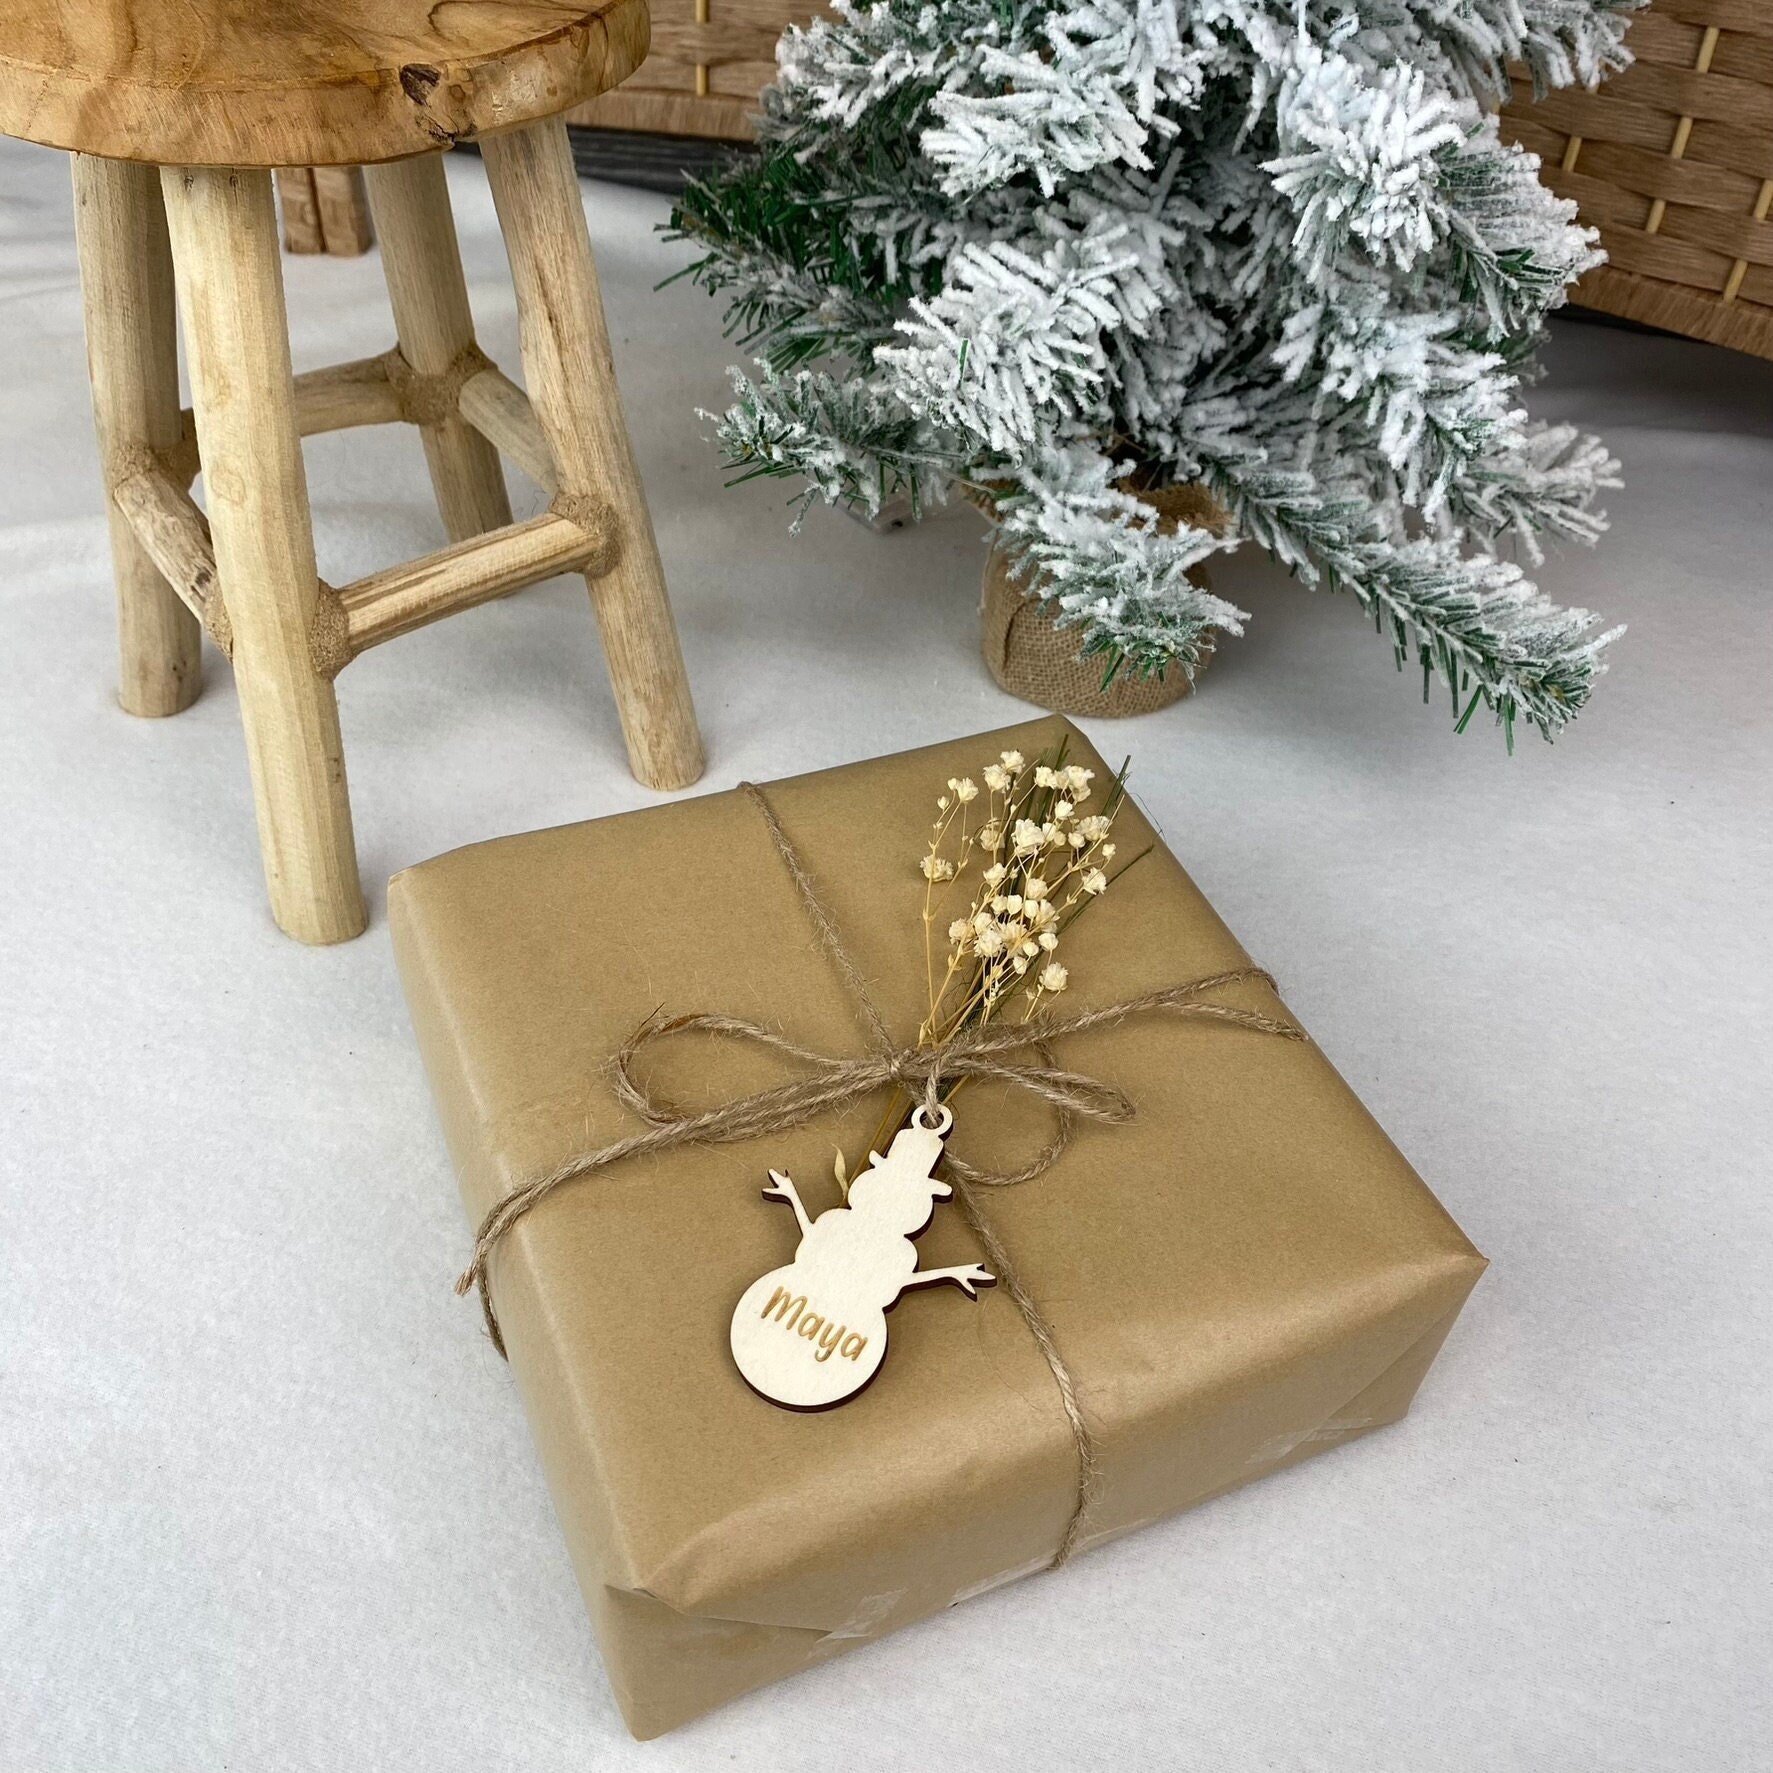 Geschenkanhänger personalisiert Weihnachten Holz Motiv Rentier  Weihnachtsgeschenke Anhänger Geschenkverpackung Weihnachten - .de